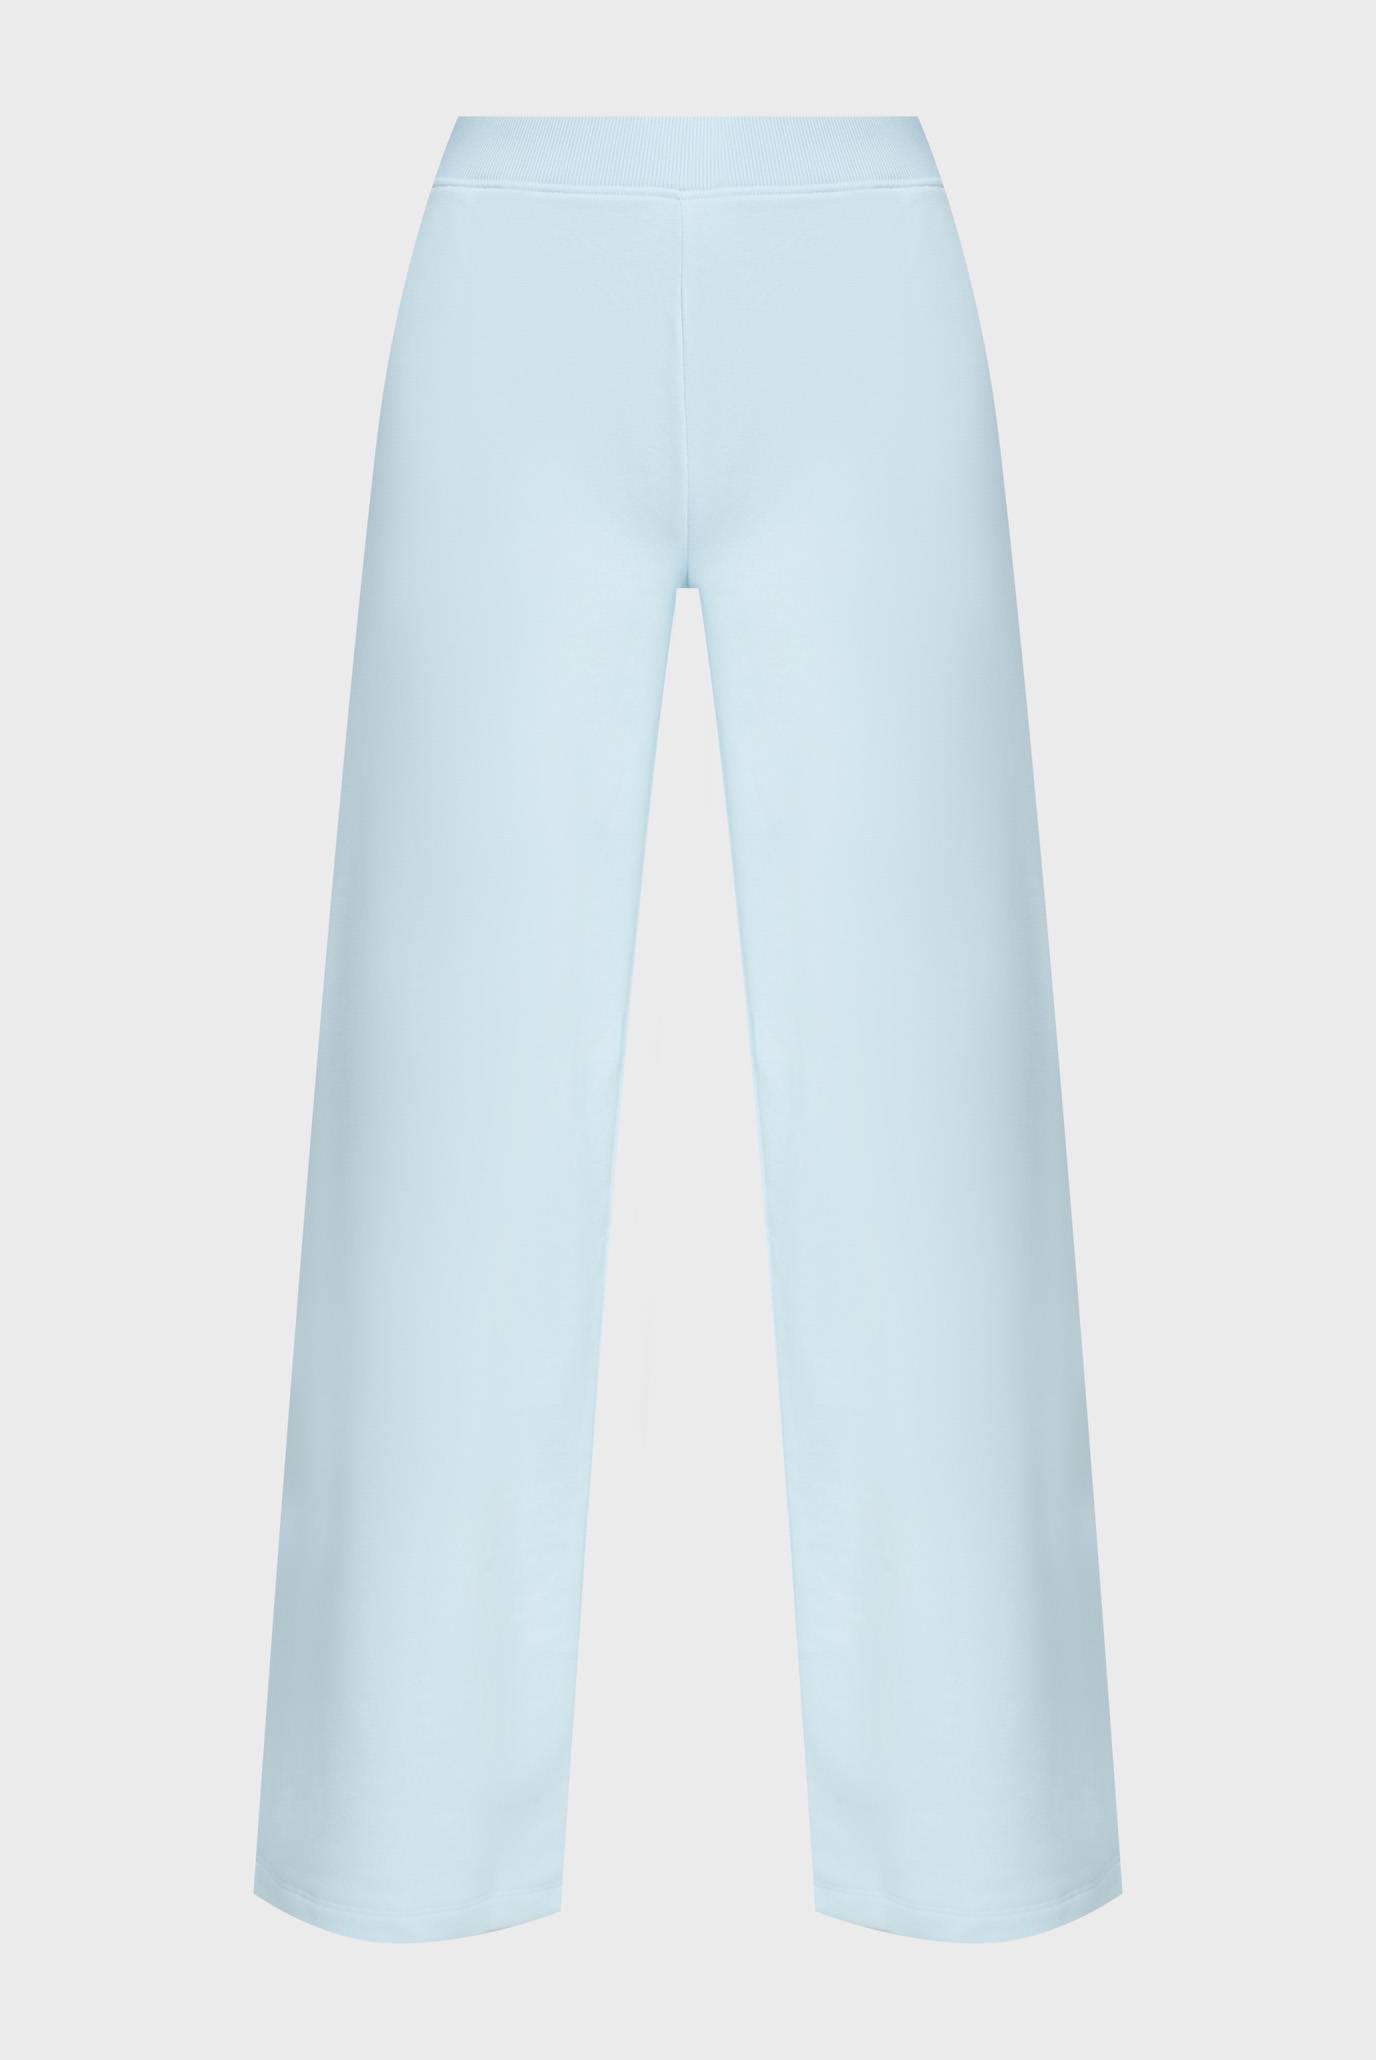 Женские голубые спортивные брюки CK EMBRO BADGE KNIT PANT 1